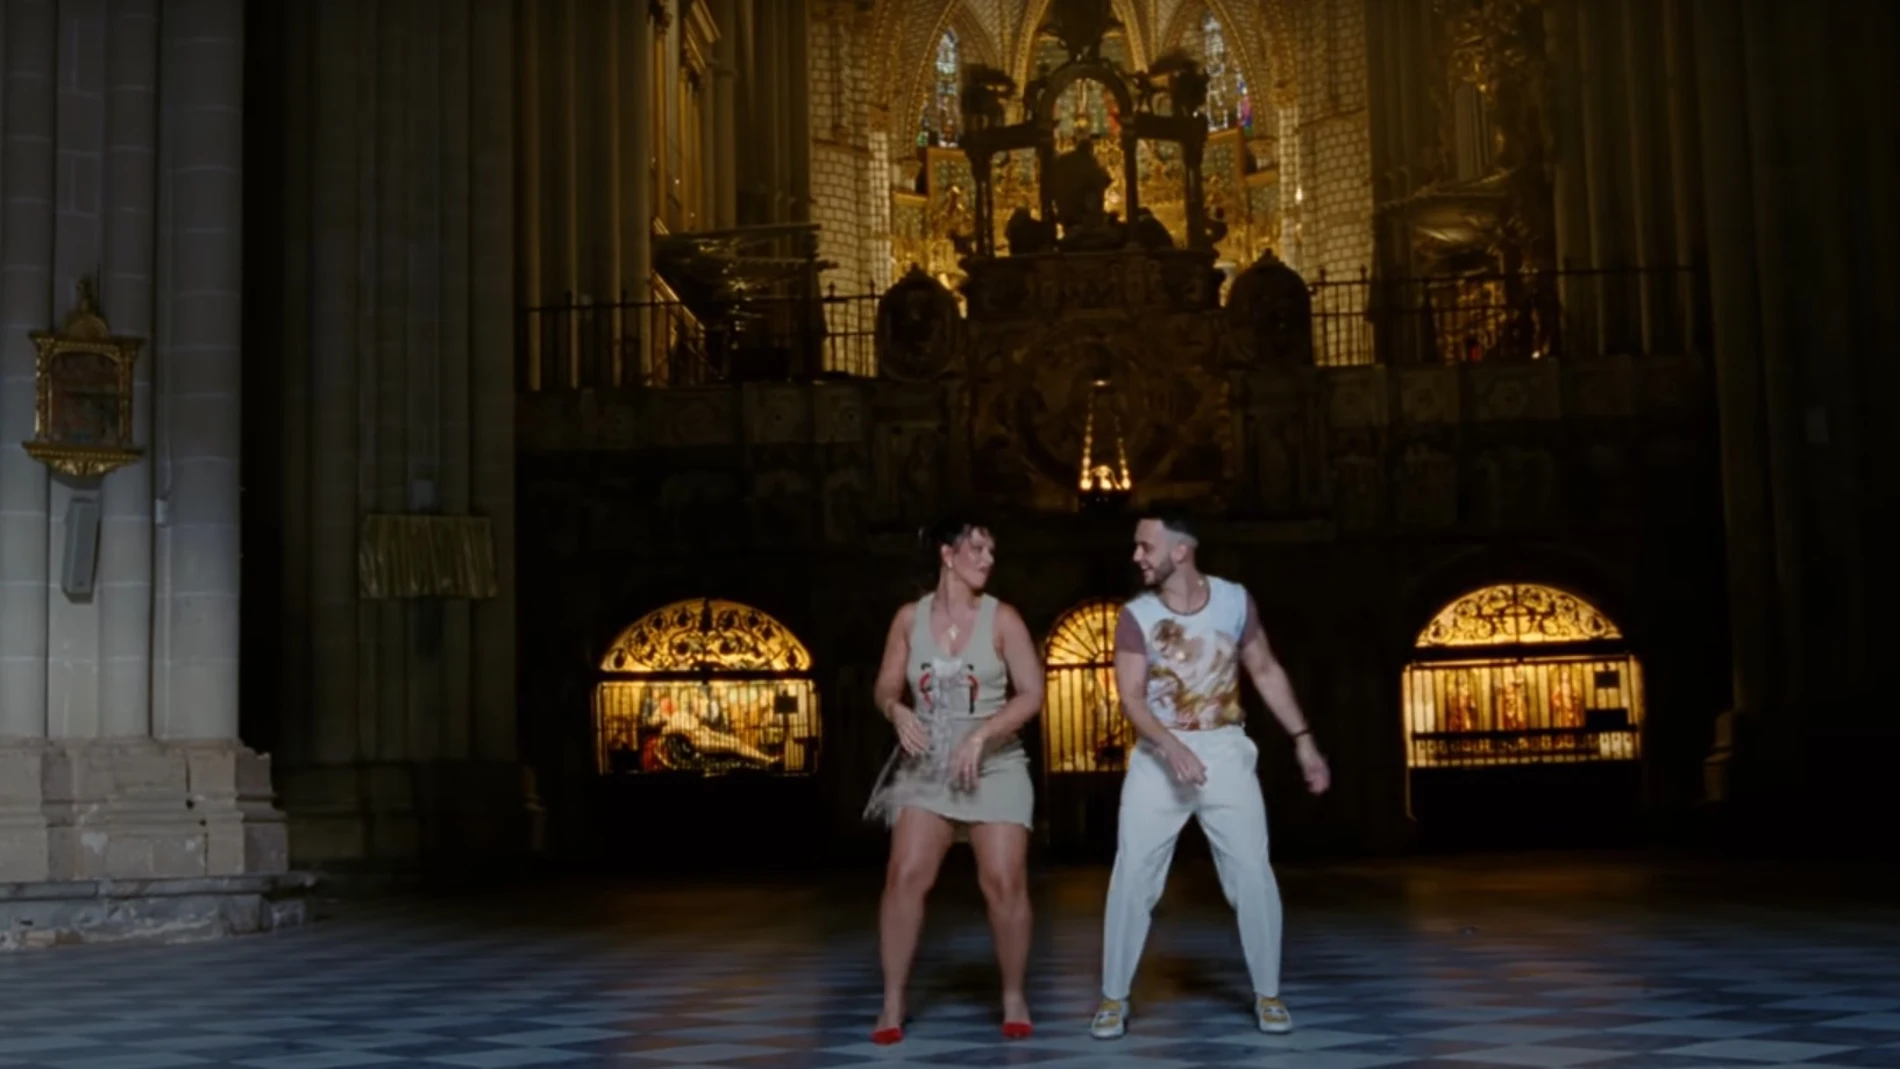 Nathy Peluso y C.Tangana bailando durante el videoclip de 'Ateo' en la catedral de Toledo